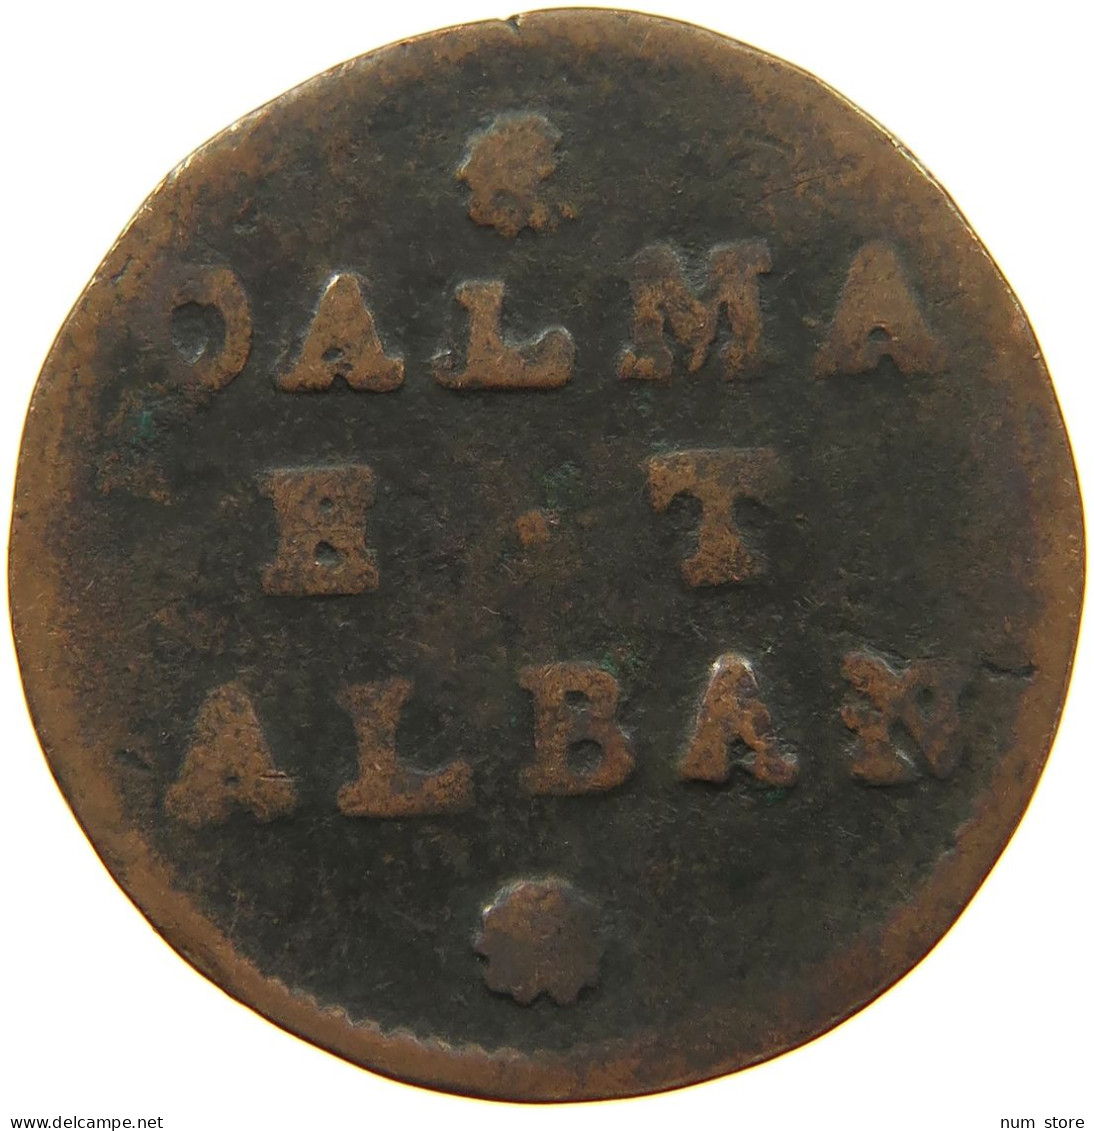 DALMATIA ALBANIA 2 SOLDI   #s055 0049 - Albanien